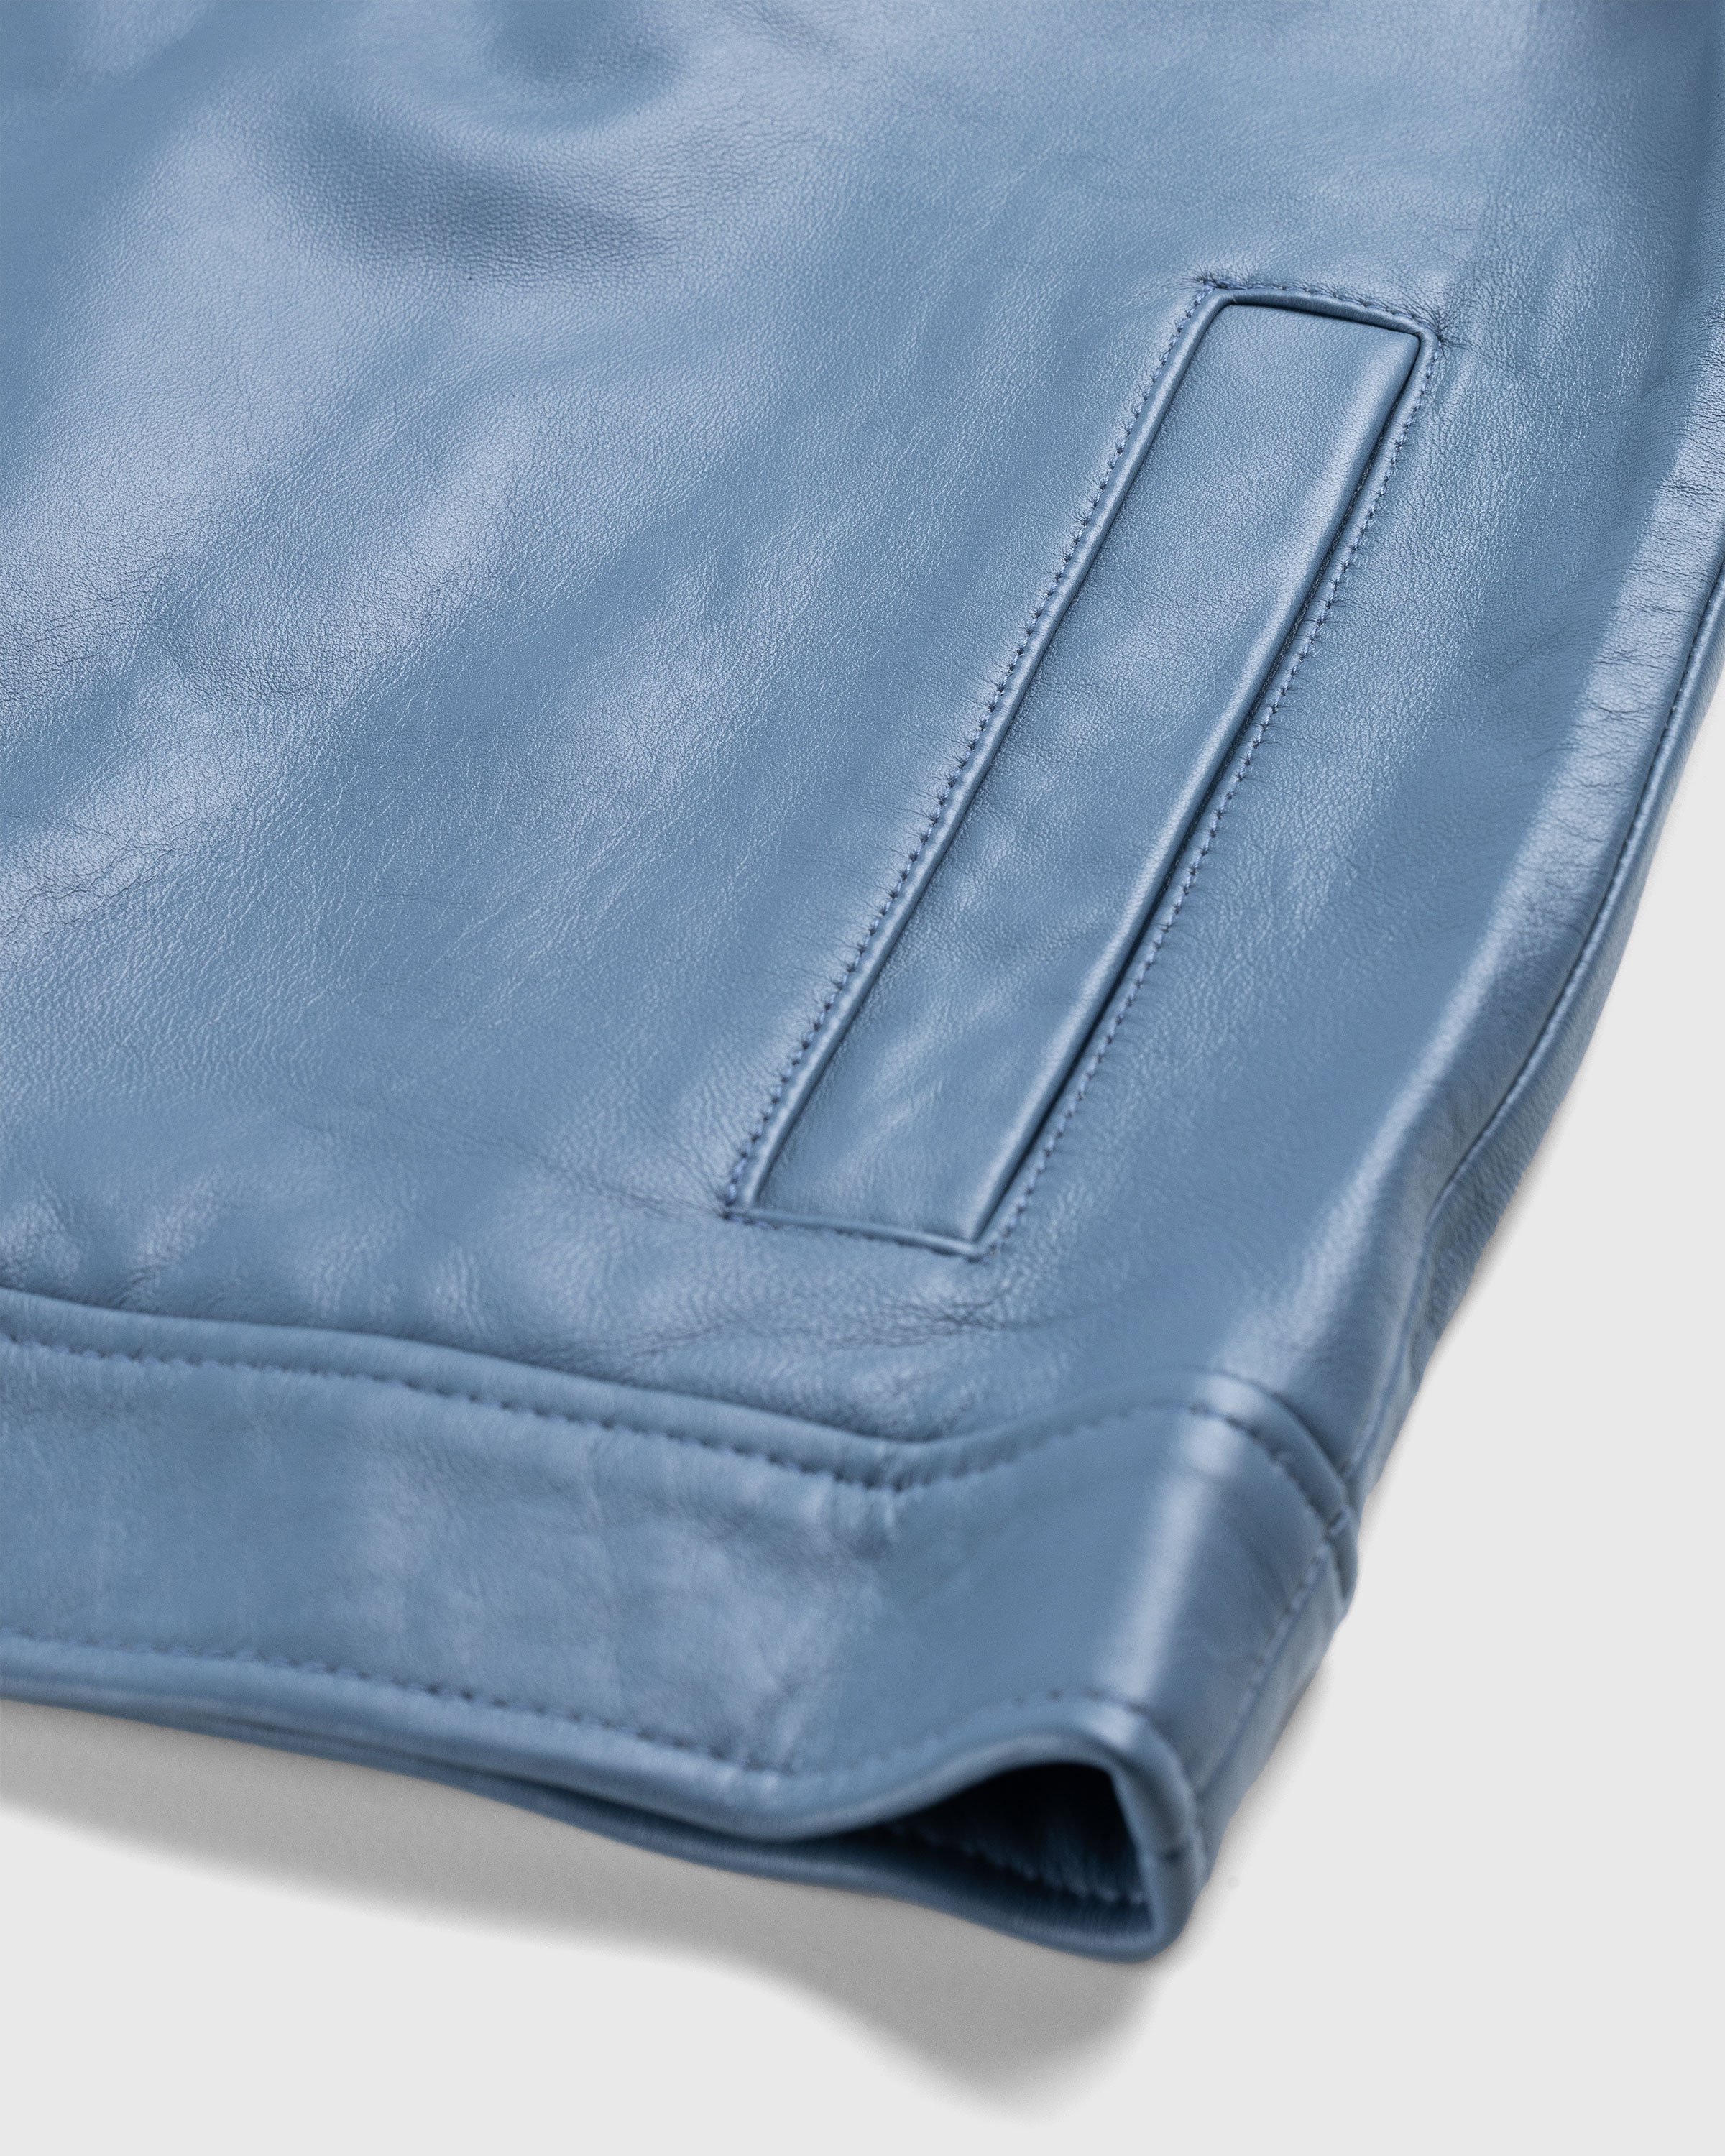 Highsnobiety HS05 - Leather Jacket Blue - Clothing - Blue - Image 7